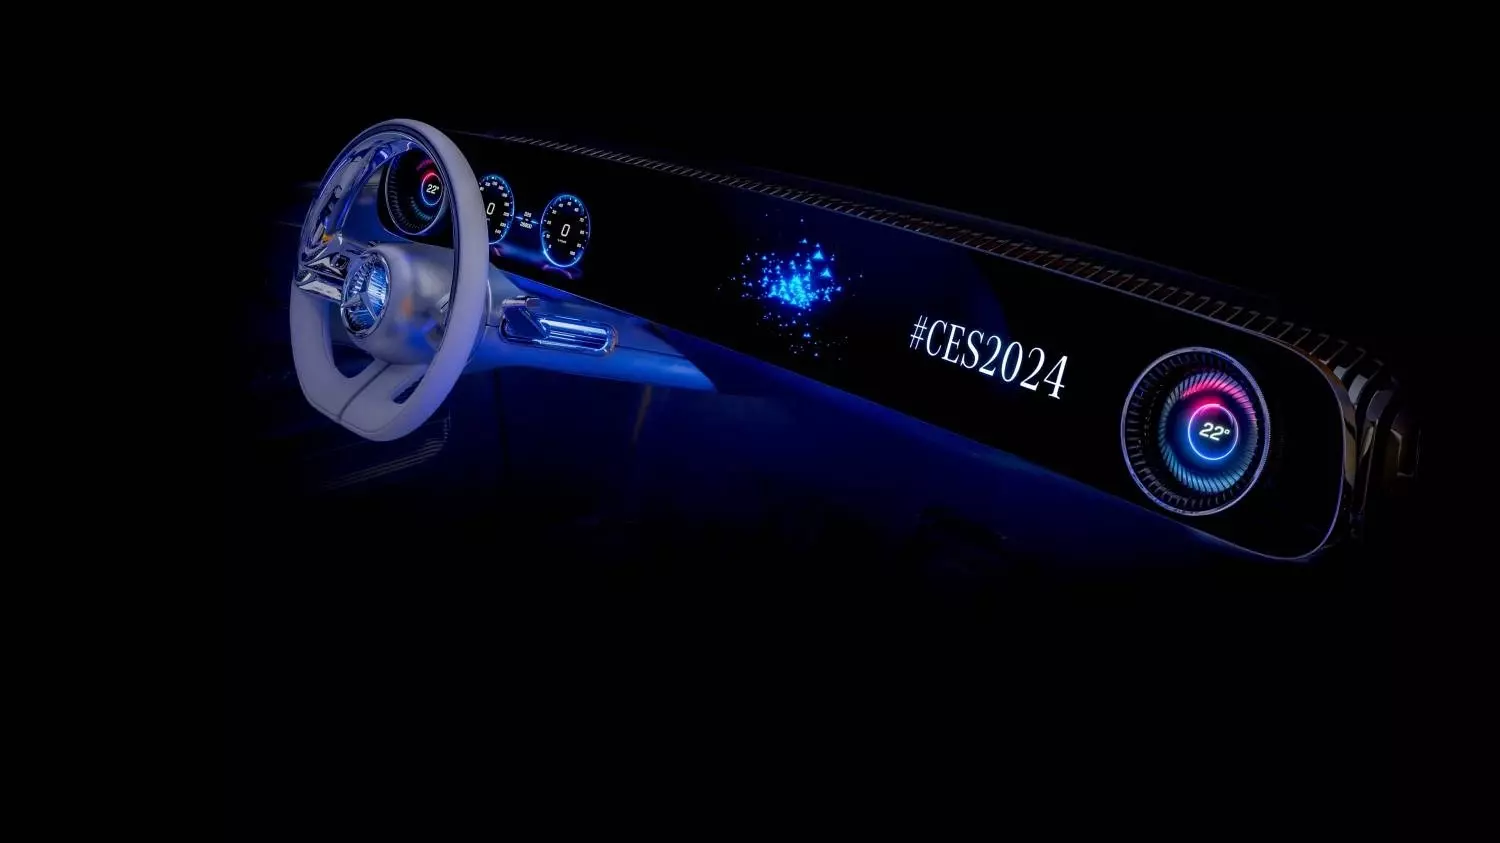 Компания Mercedes-Benz приняла участие в выставке CES 2024, в ходе которой продемонстрировала виртуального помощника.